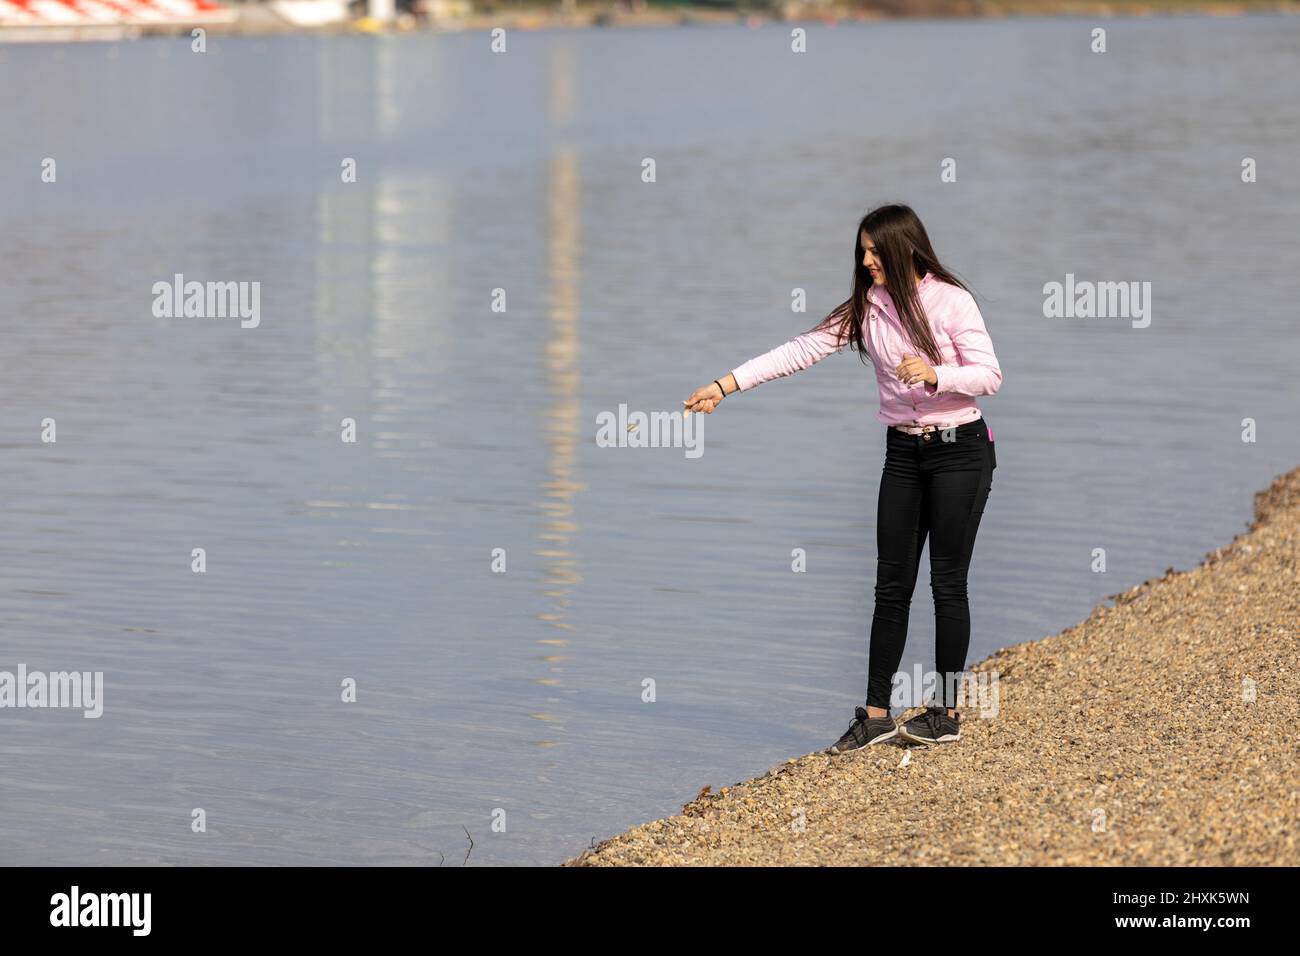 Una giovane ragazza in piedi sulla riva del lago e gettare pietre in acqua. Ricreazione in natura, tempo libero, passeggiate all'aria aperta. Foto Stock